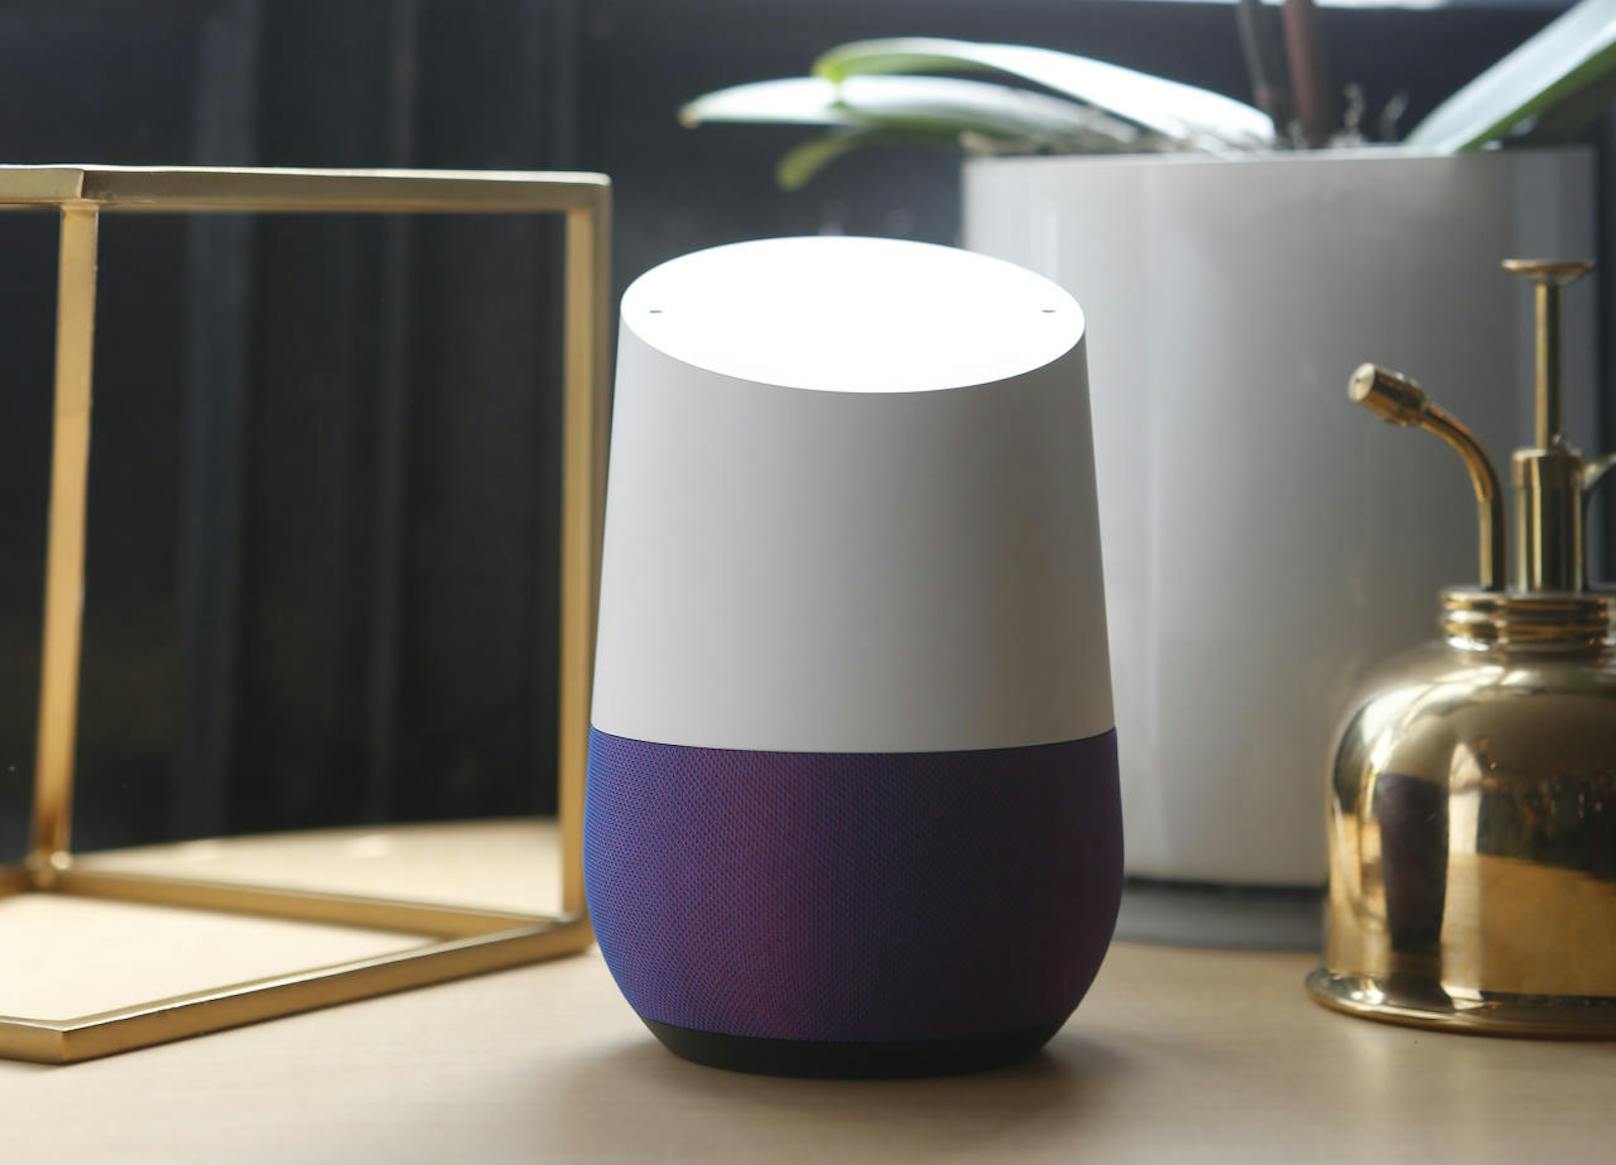 Google soll nicht ein neues Smartphone, aber möglicherweise neue Google-Home-Geräte präsentieren.